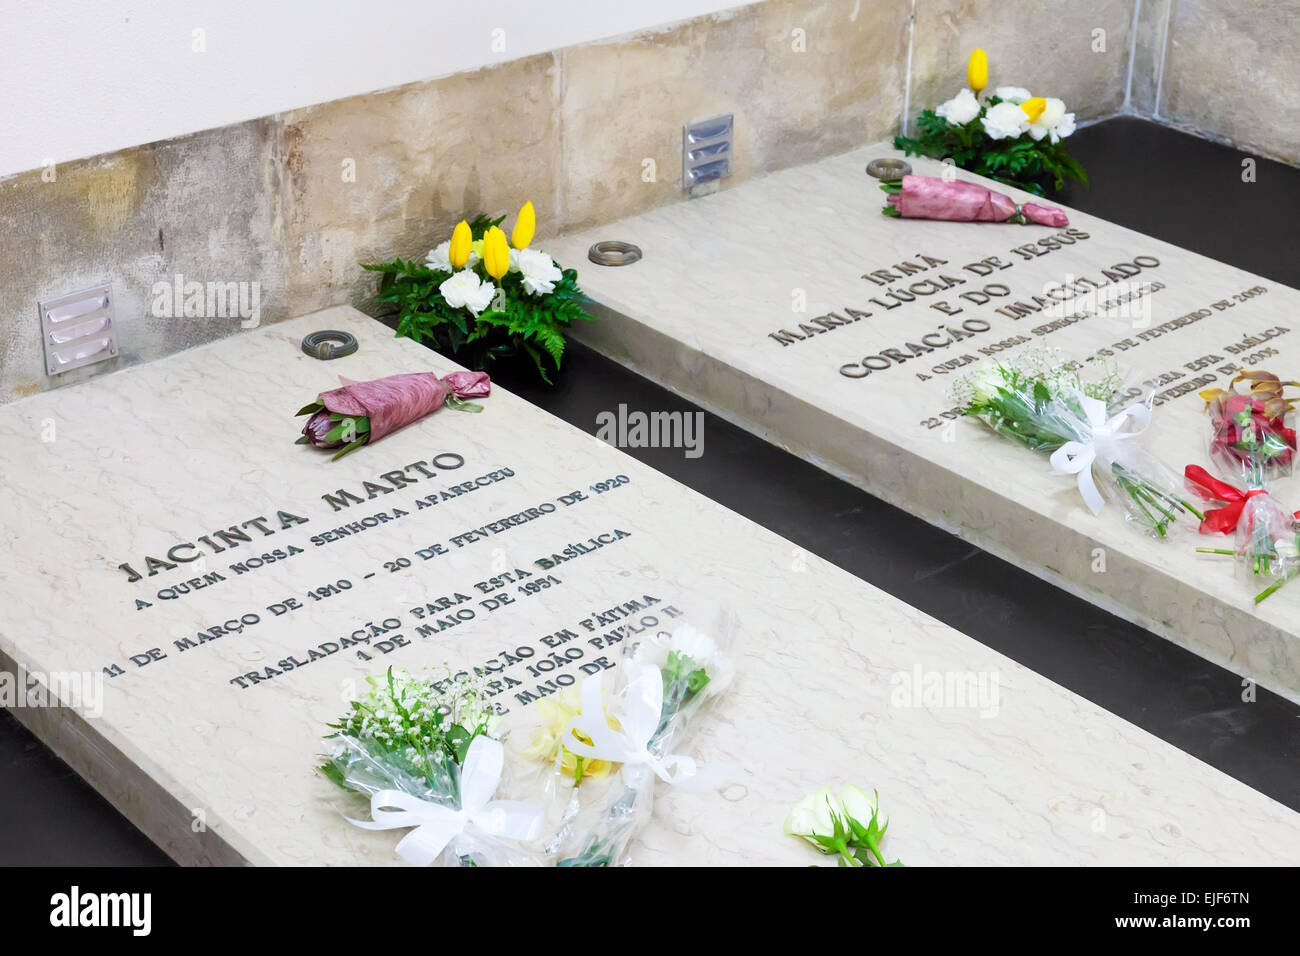 Sanctuaire de Fatima, Portugal, le 07 mars, 2015 - Tombes de Jacinta Marto et Sœur Lucie, deux des trois jeunes bergers que w Banque D'Images